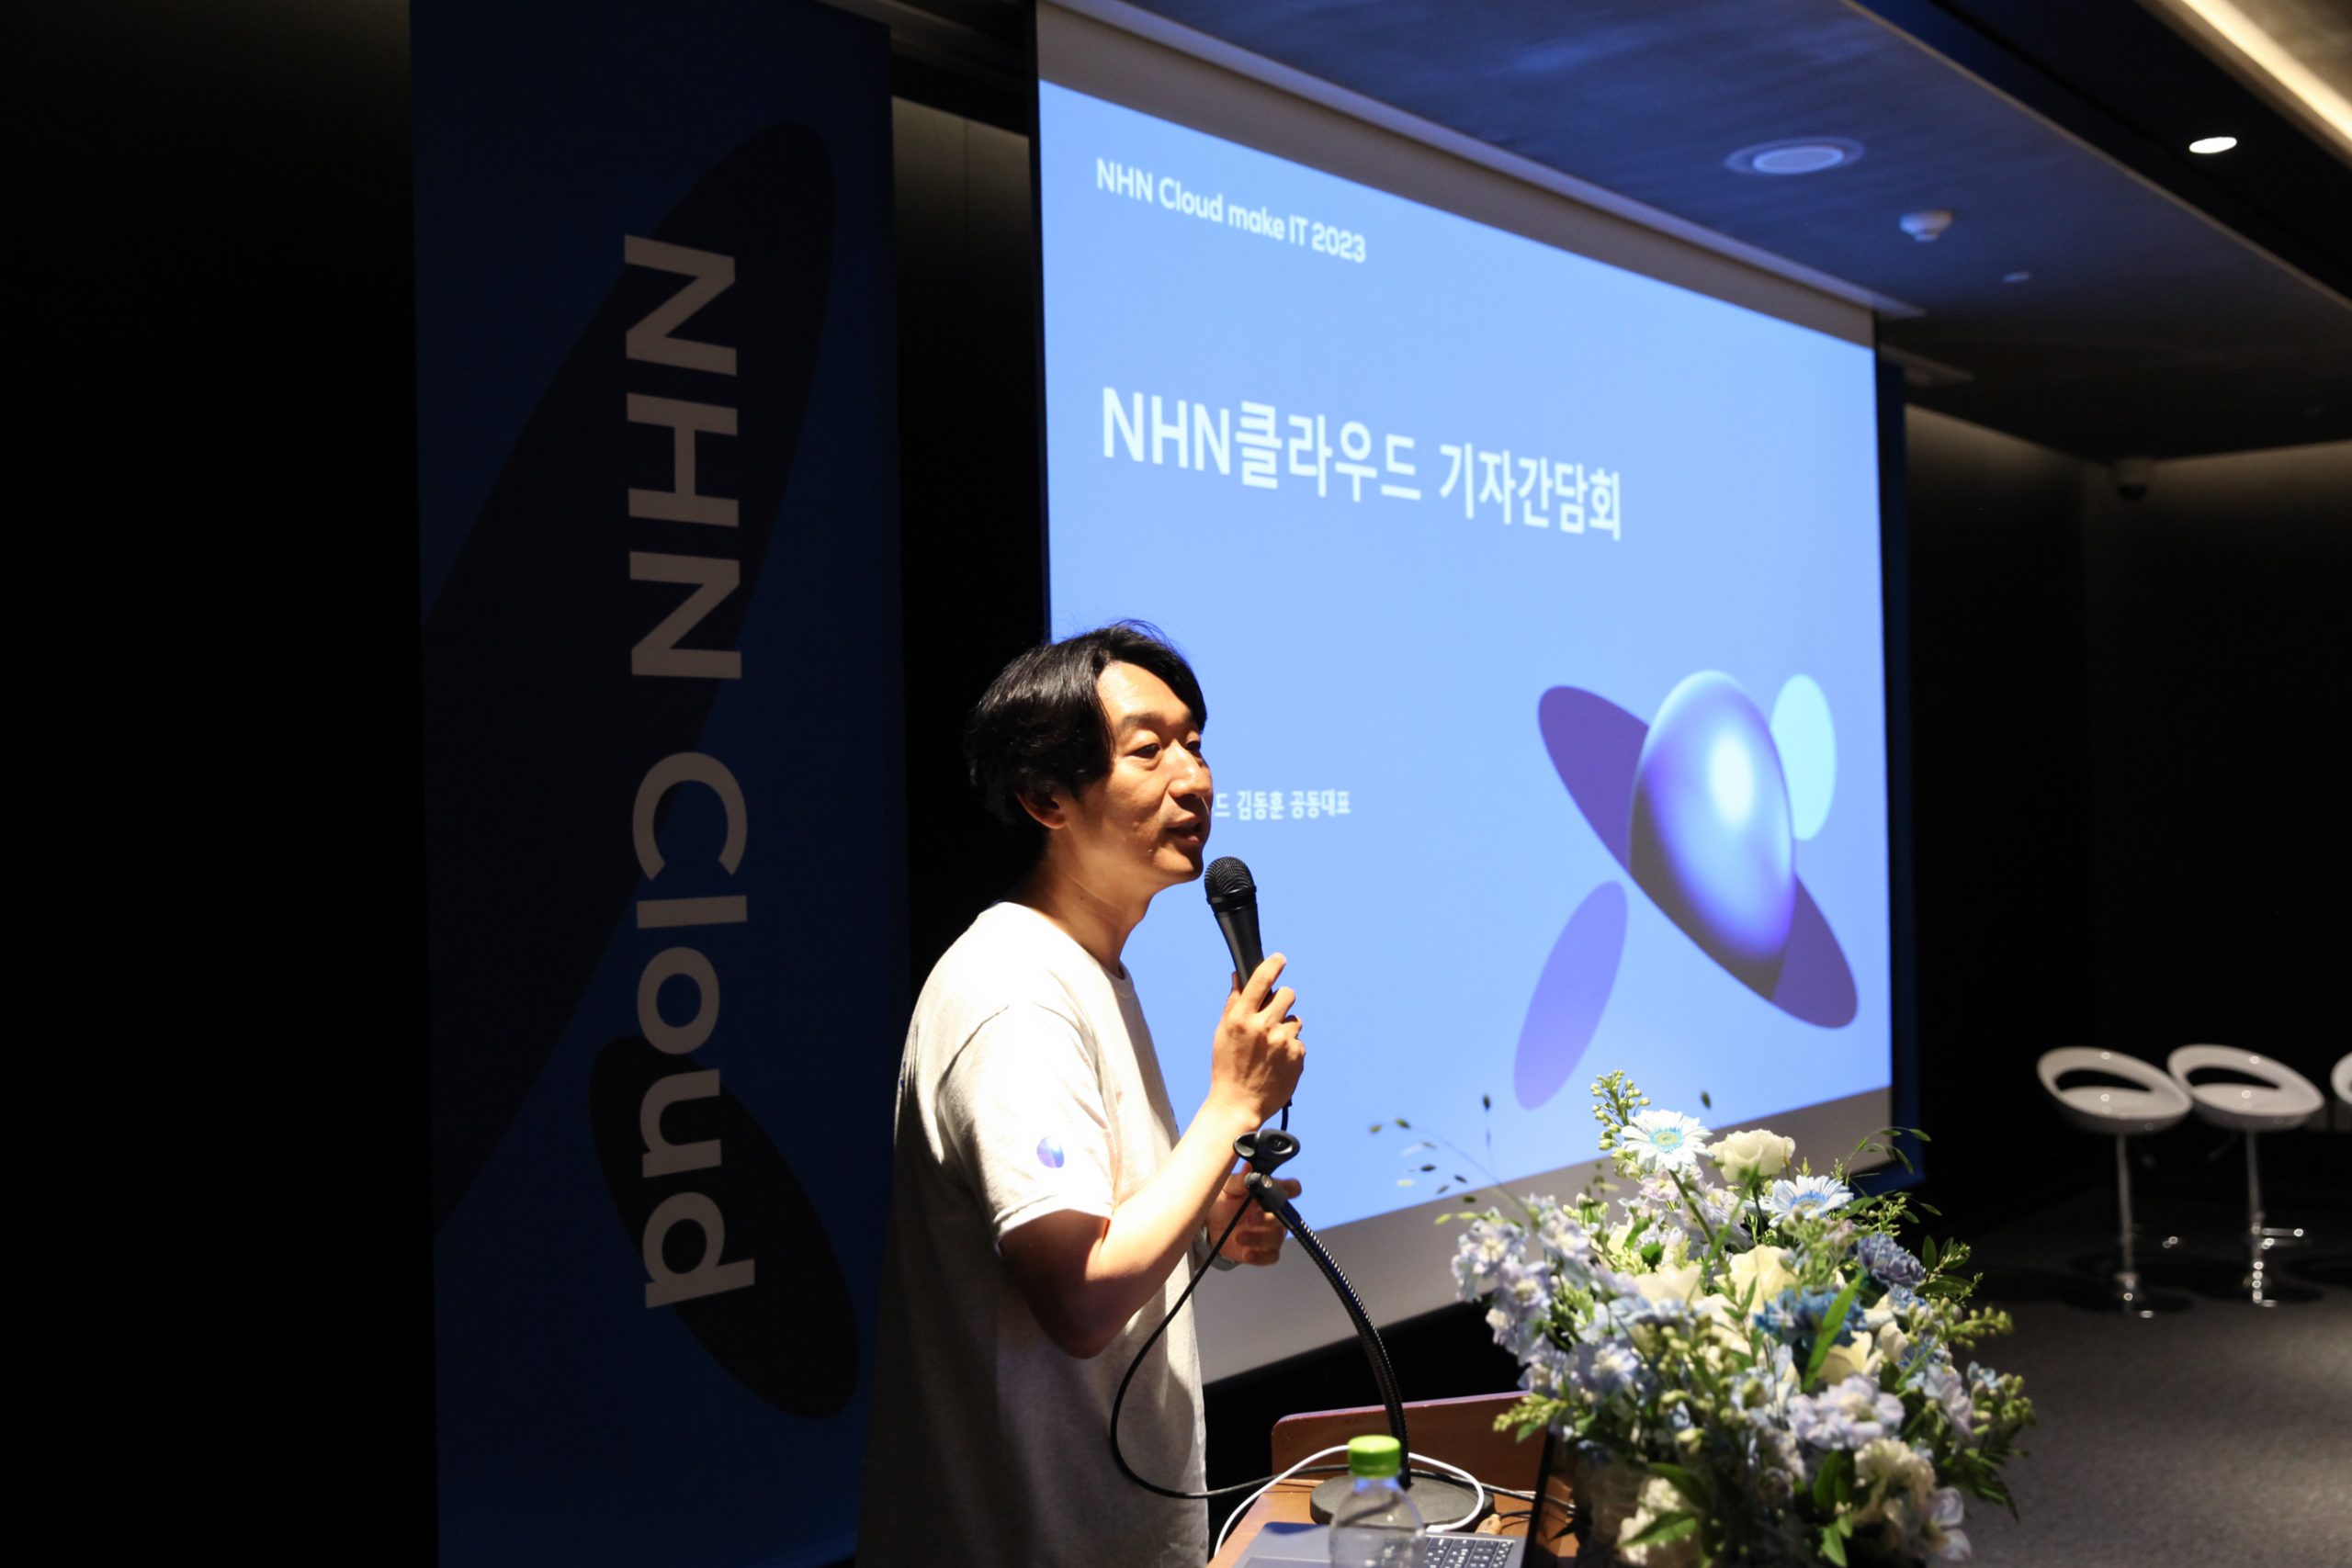 김동훈 NHN클라우드 공동대표, "게임·금융·공공 버티컬 공략 통했다"···"AI·글로벌 강화로 2023년 매출 2000억 원 목표"